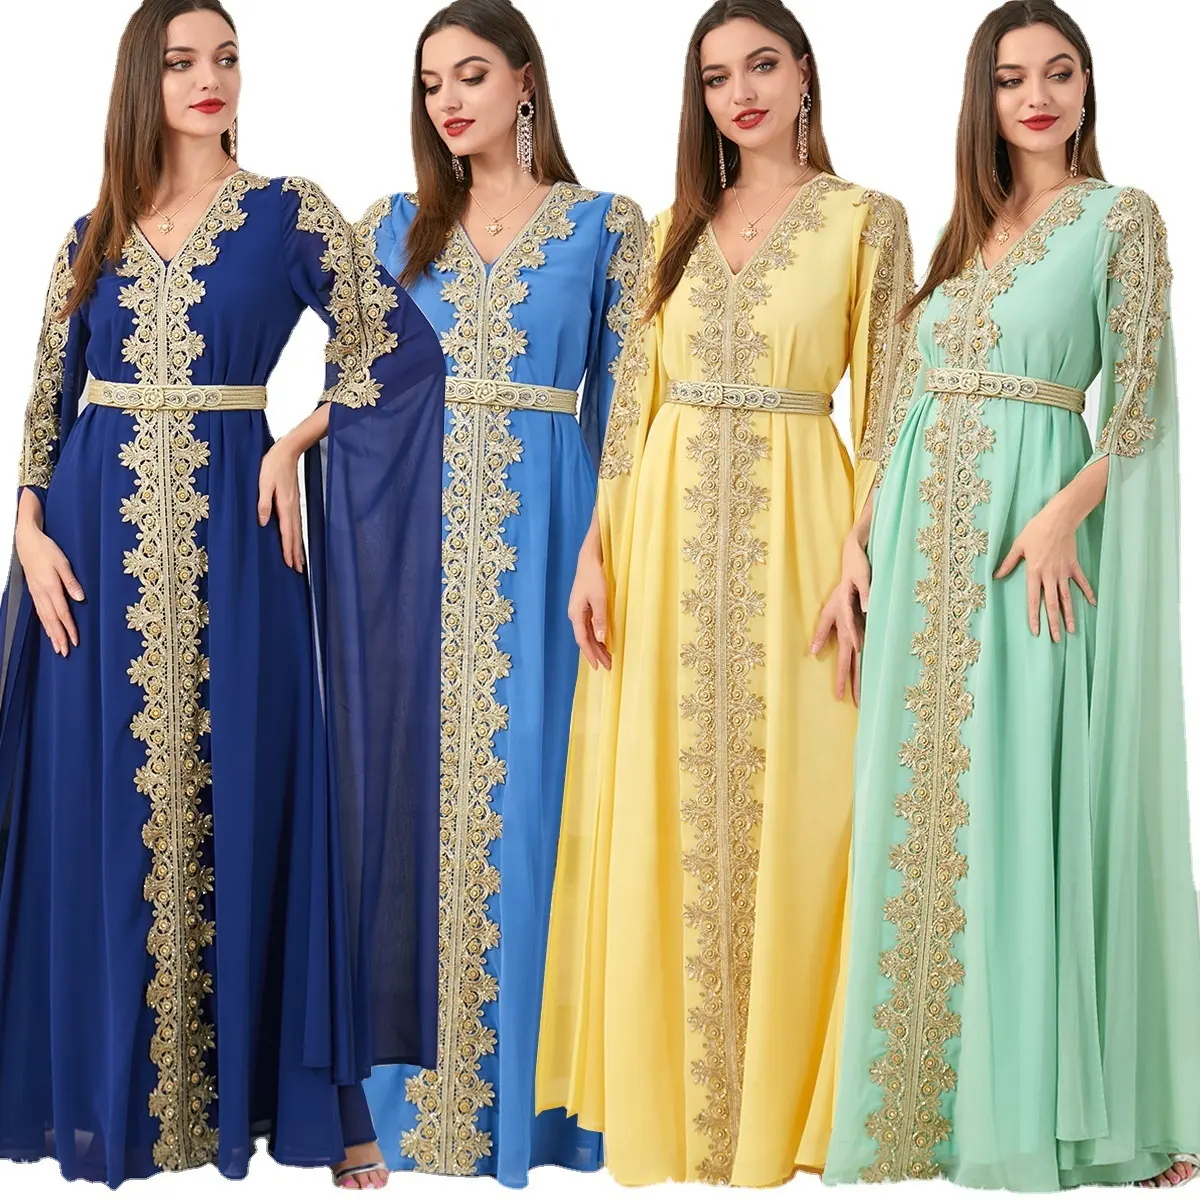 Элегантное 4-цветное платье для скромной исламской одежды